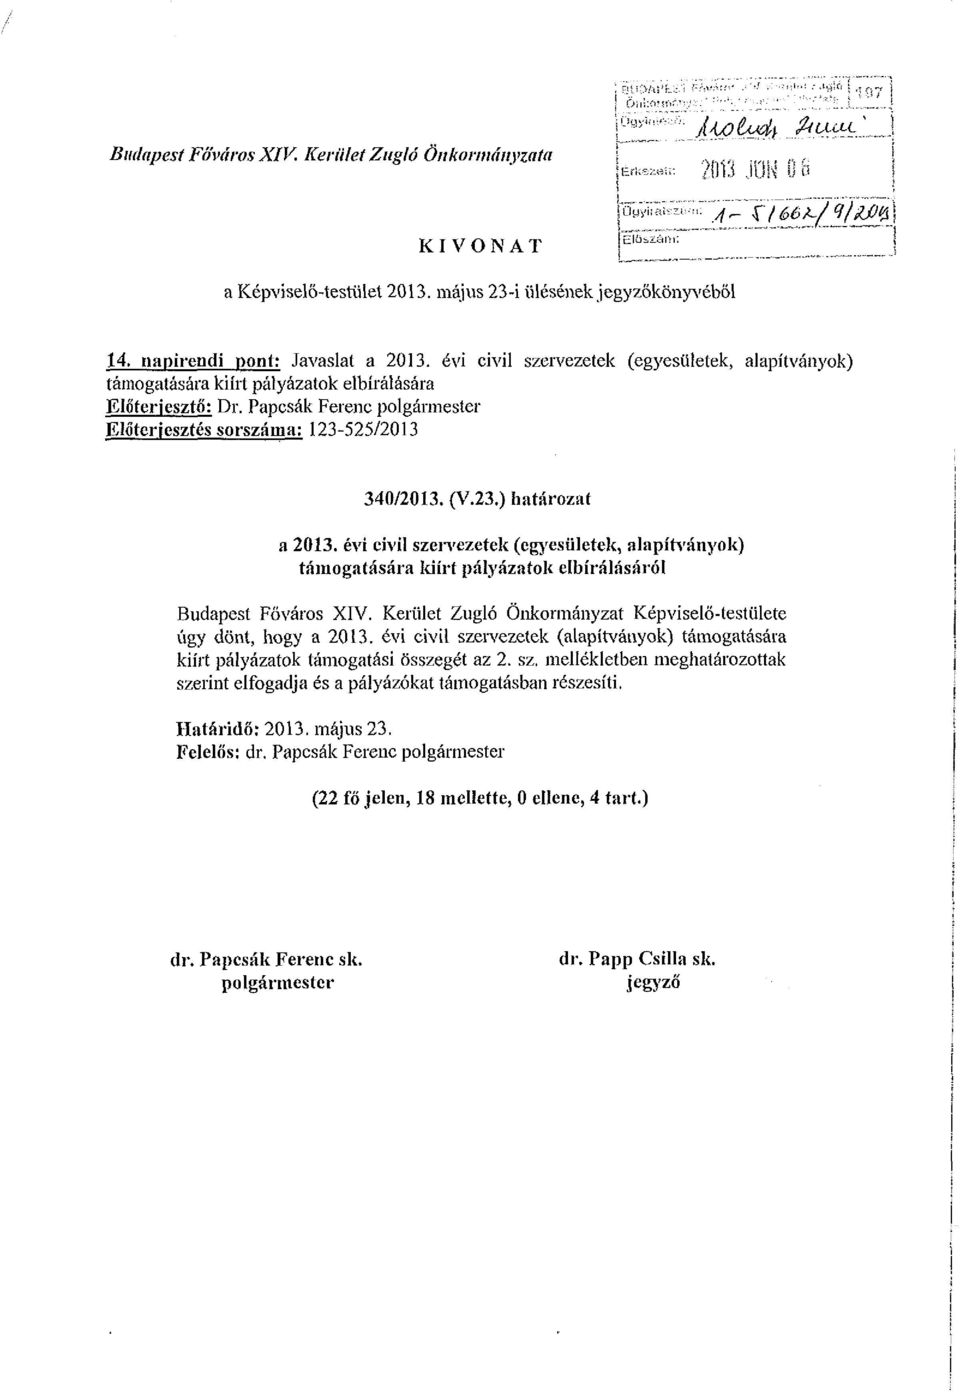 Papcsák Ferenc polgármester Előterjesztés sorszáma: 123525/2013 340/2013. (V.23.) határozat a 2013.